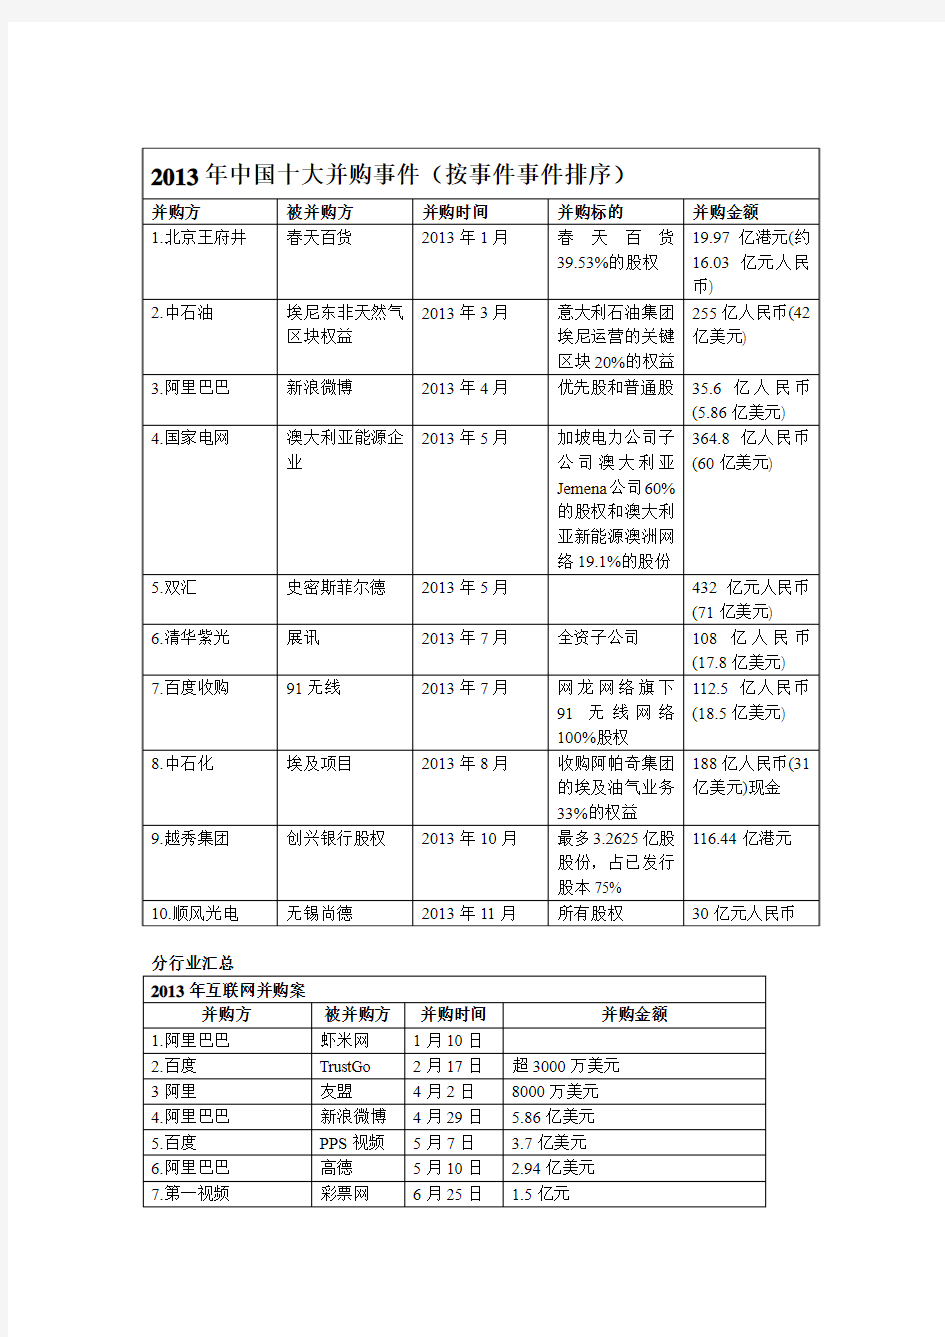 2013年中国并购案例列表